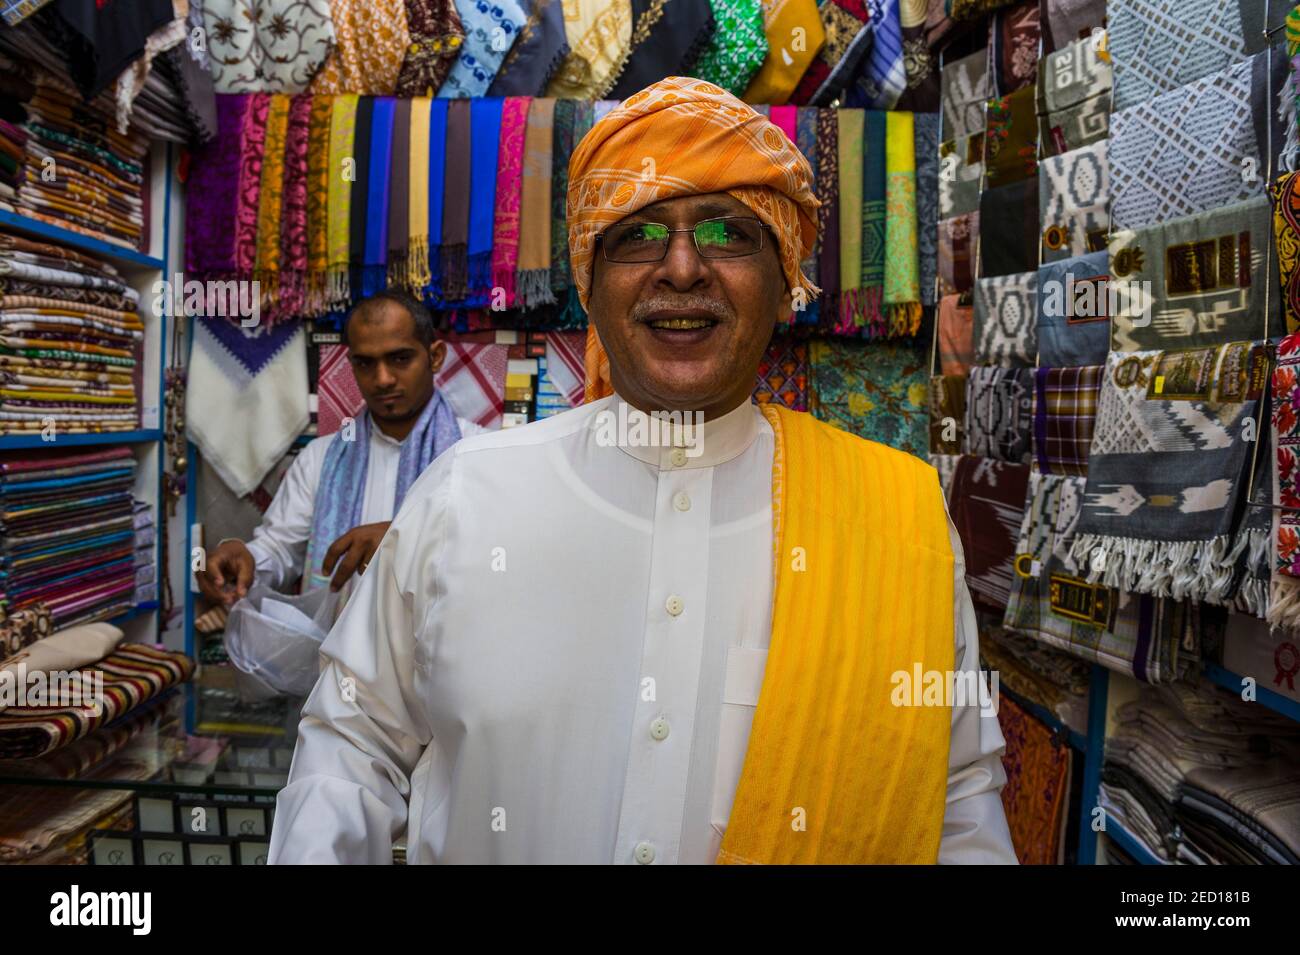 Traditionell gekleideter Mann in einem Tuchladen, Altstadt von Jeddah, Saudi-Arabien Stockfoto